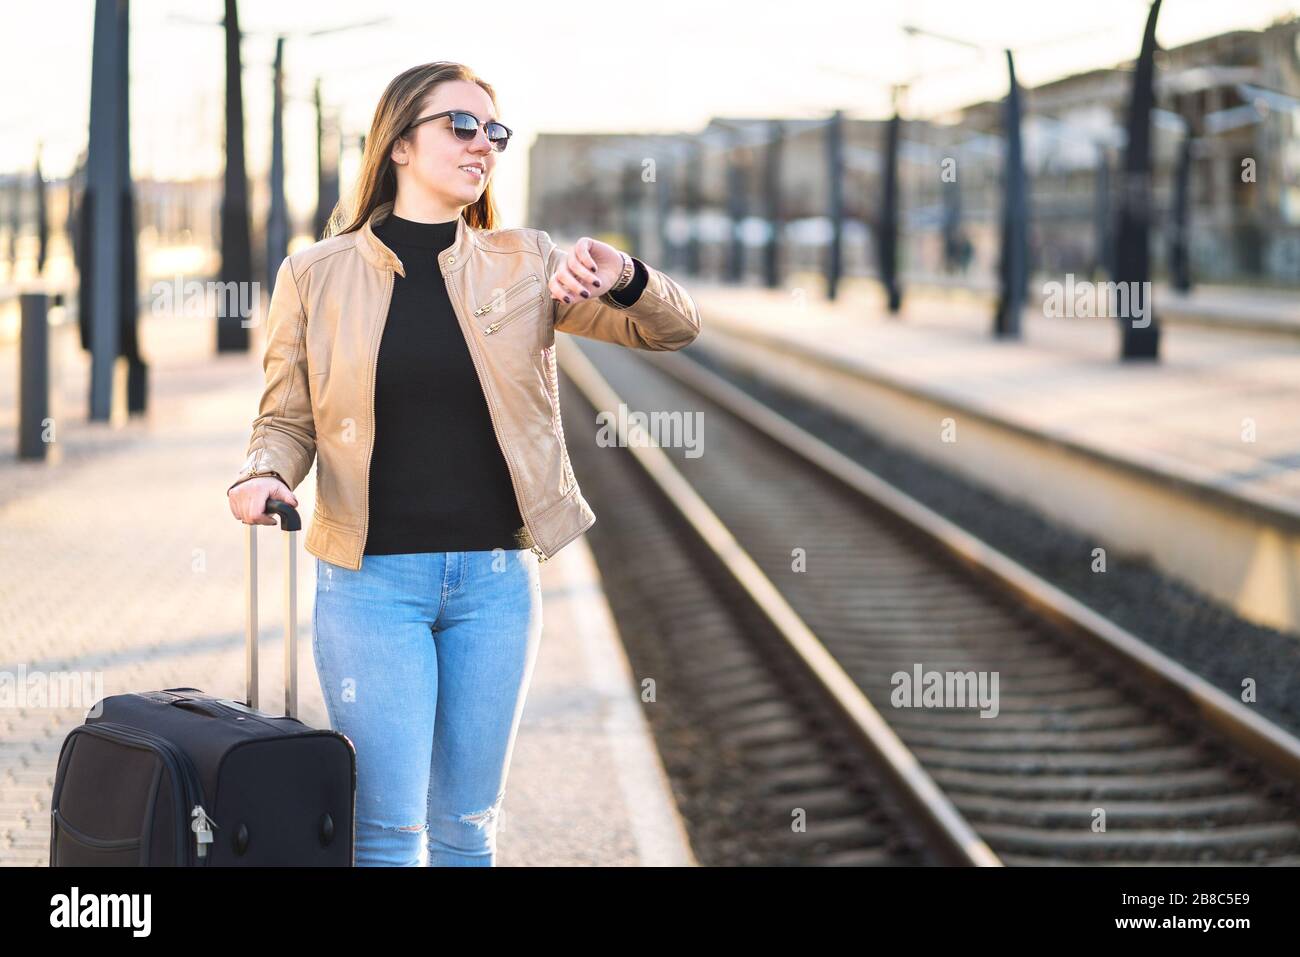 Frau, die sich die Zeit ansieht und zuschaut, während sie auf den Zug wartet. Lächelnde und fröhliche Reisende, die am Bahnhof und am Bahnsteig stehen. Stockfoto